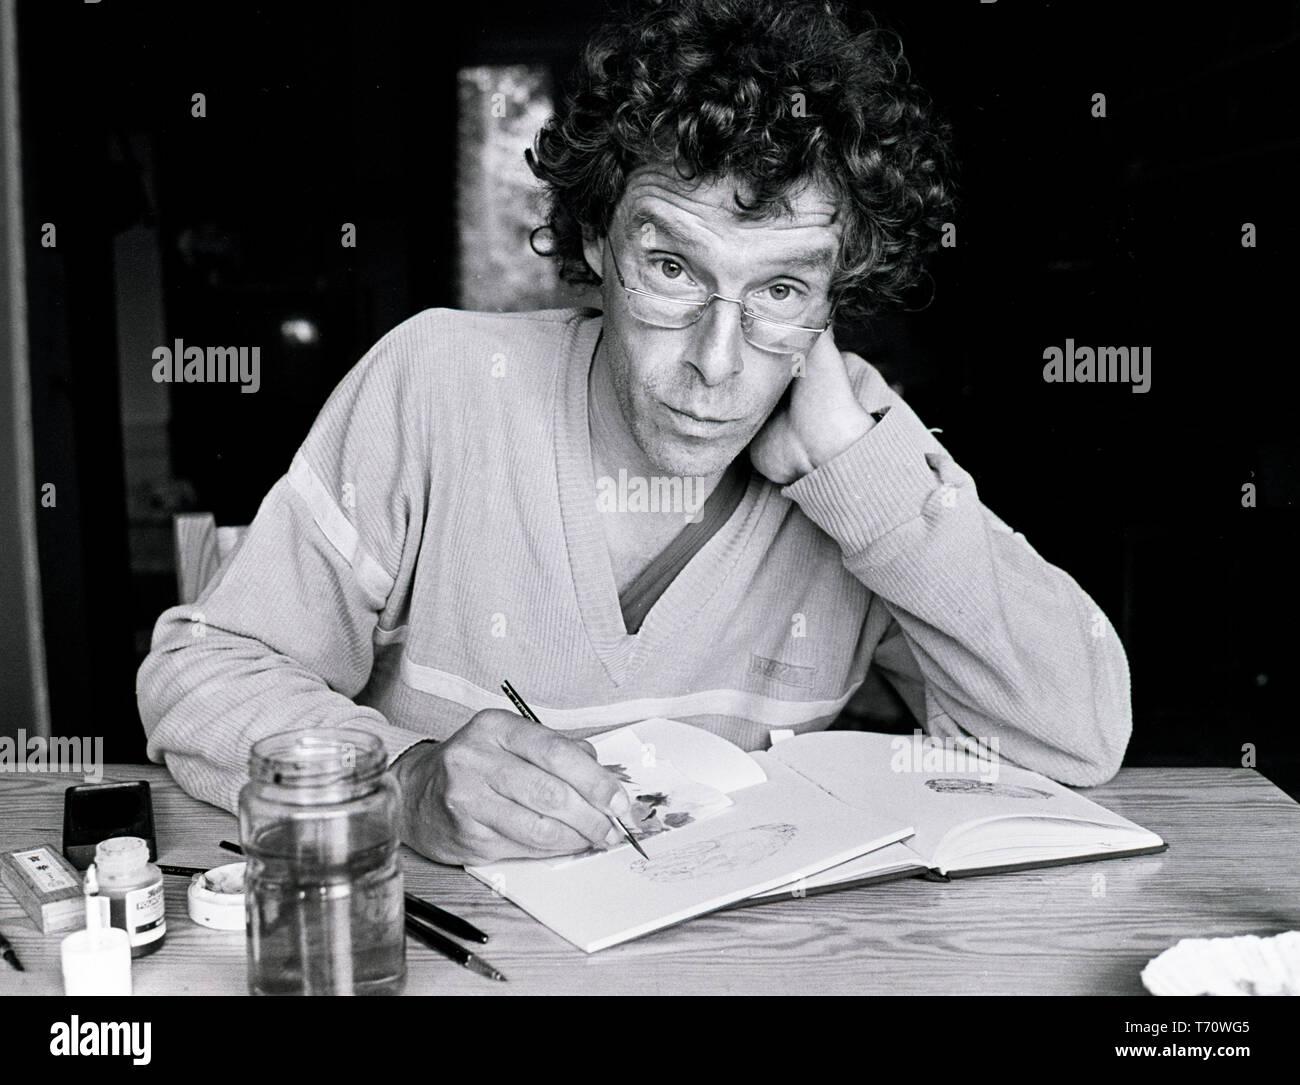 L'illustrateur de l'art néerlandais Peter Vos, posant dans son atelier. Pays-bas, ca 1975 (Photo Gijsbert Hanekroot) Banque D'Images